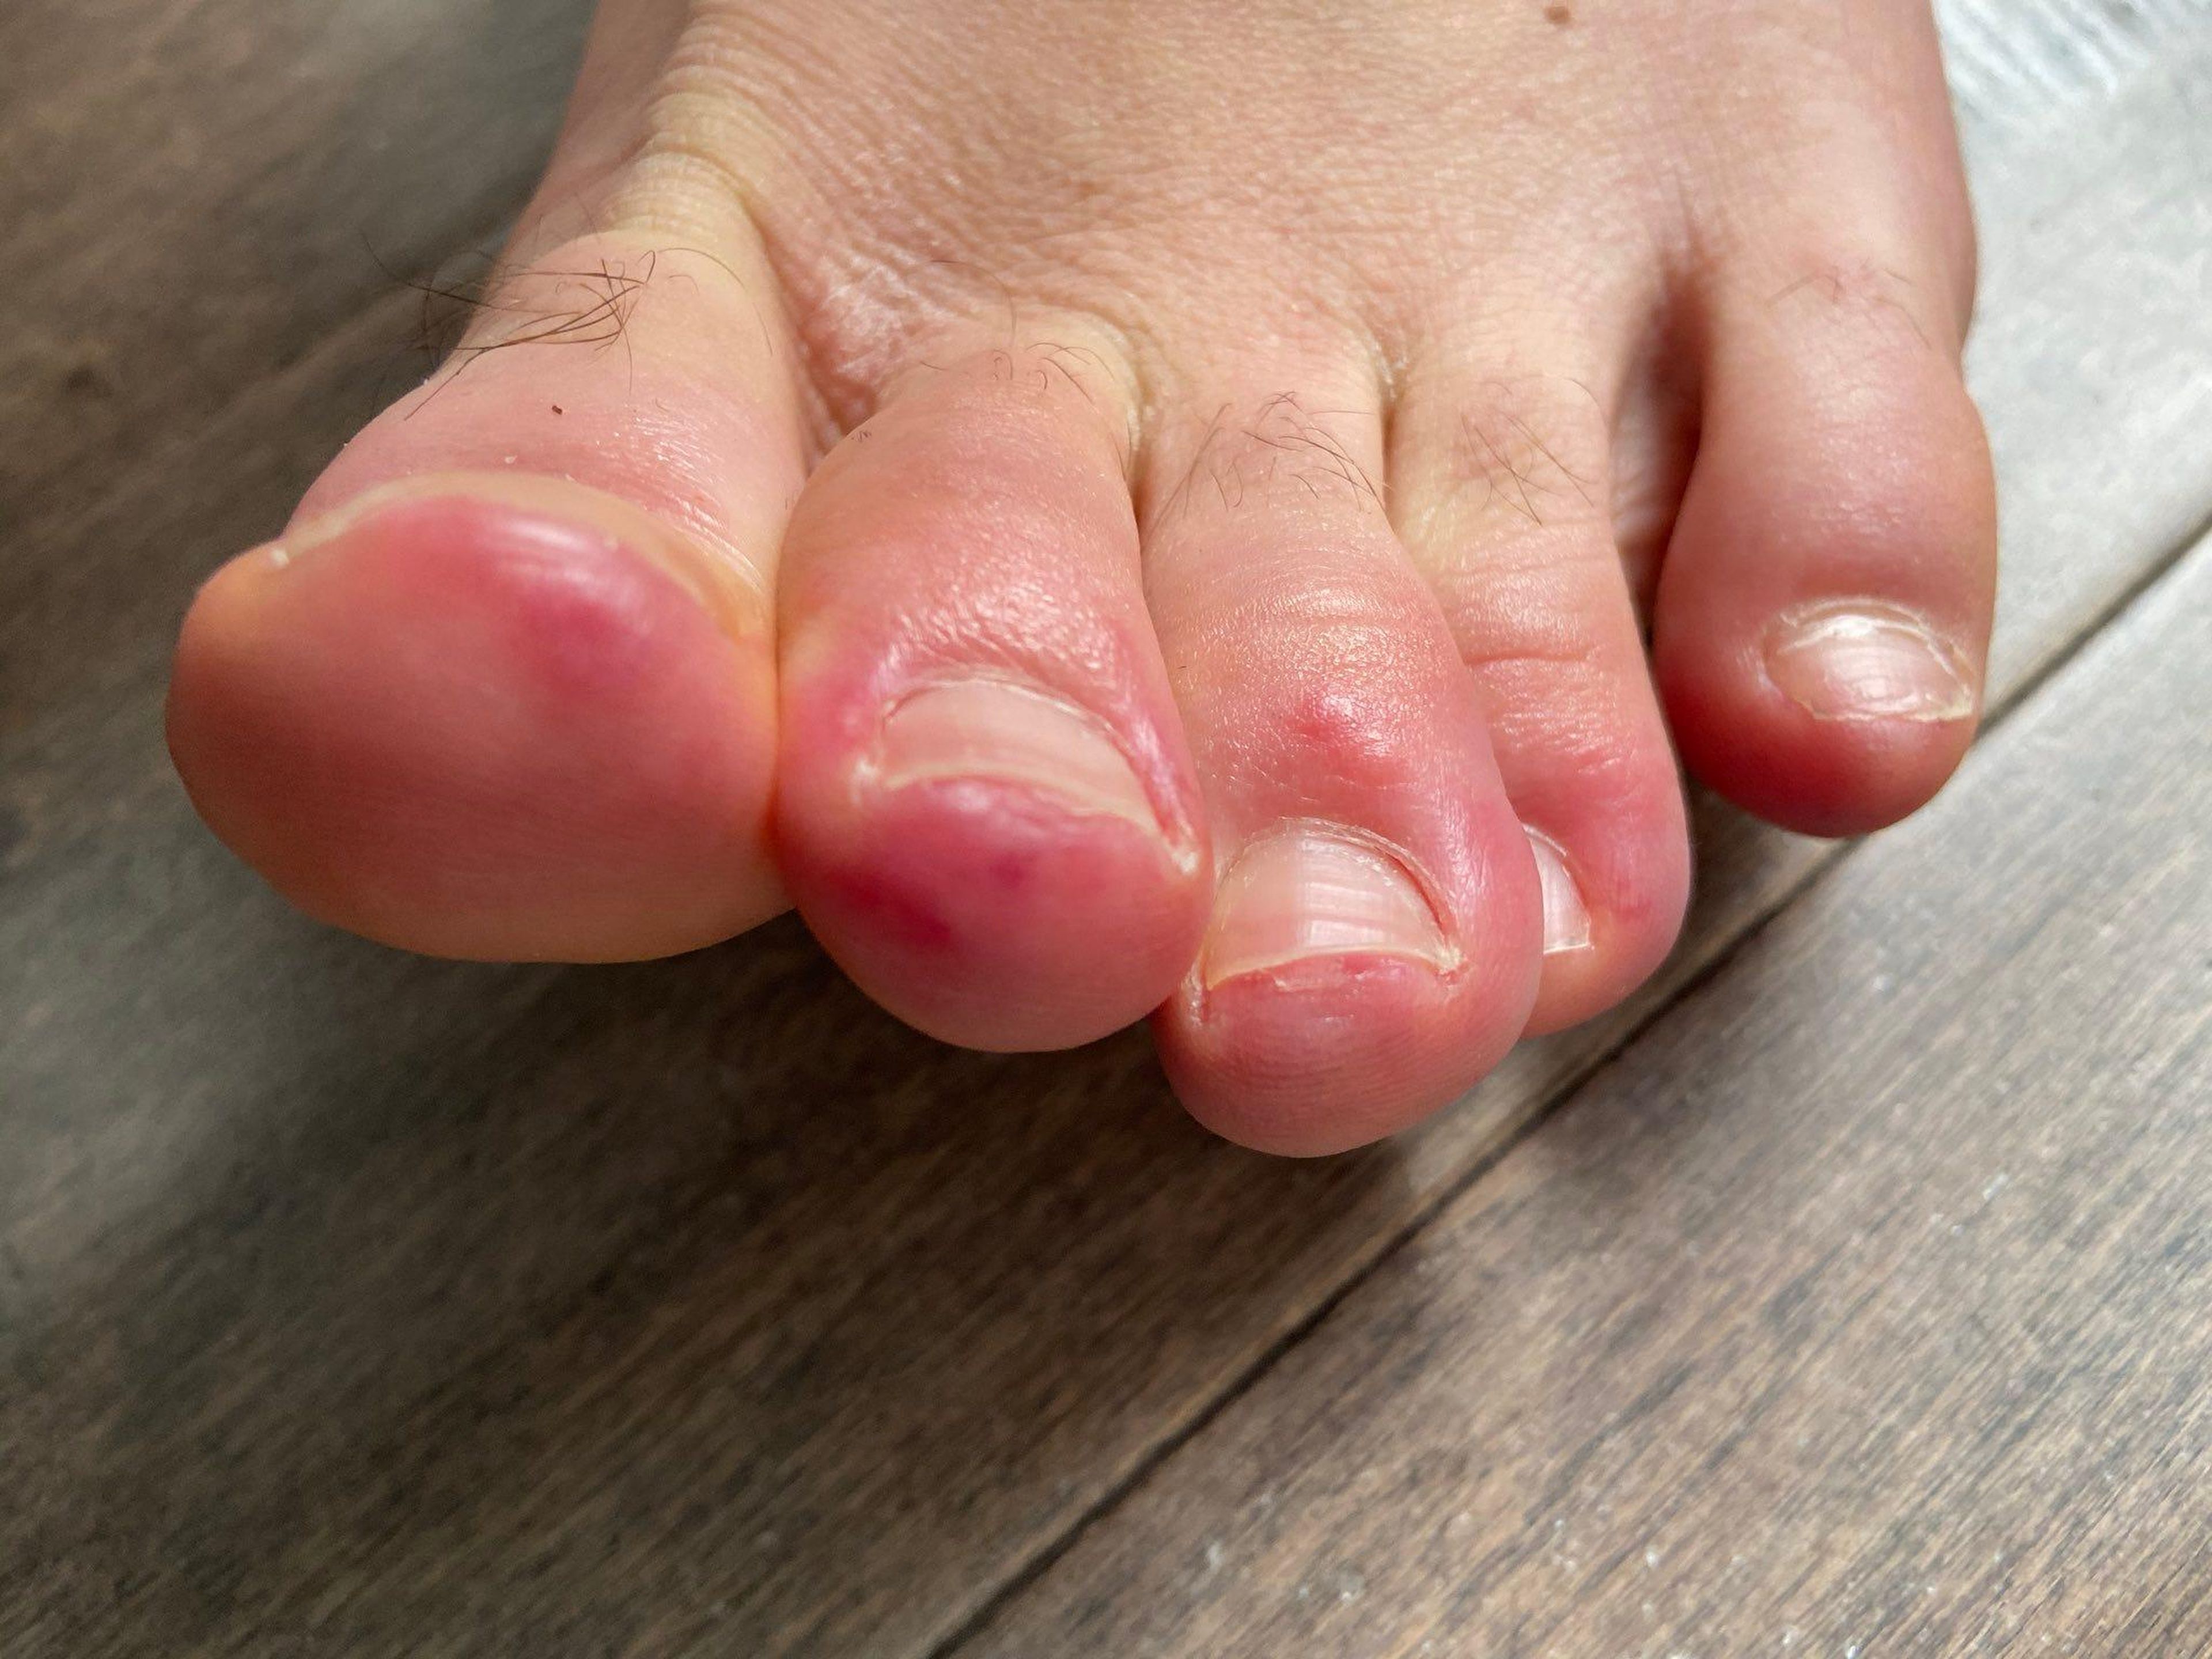 Los dermatólogos han reportado haber visto a pacientes con coronavirus con los dedos de los pies morados e hinchados — lo que la comunidad médica ahora llama "dedos de los pies COVID".